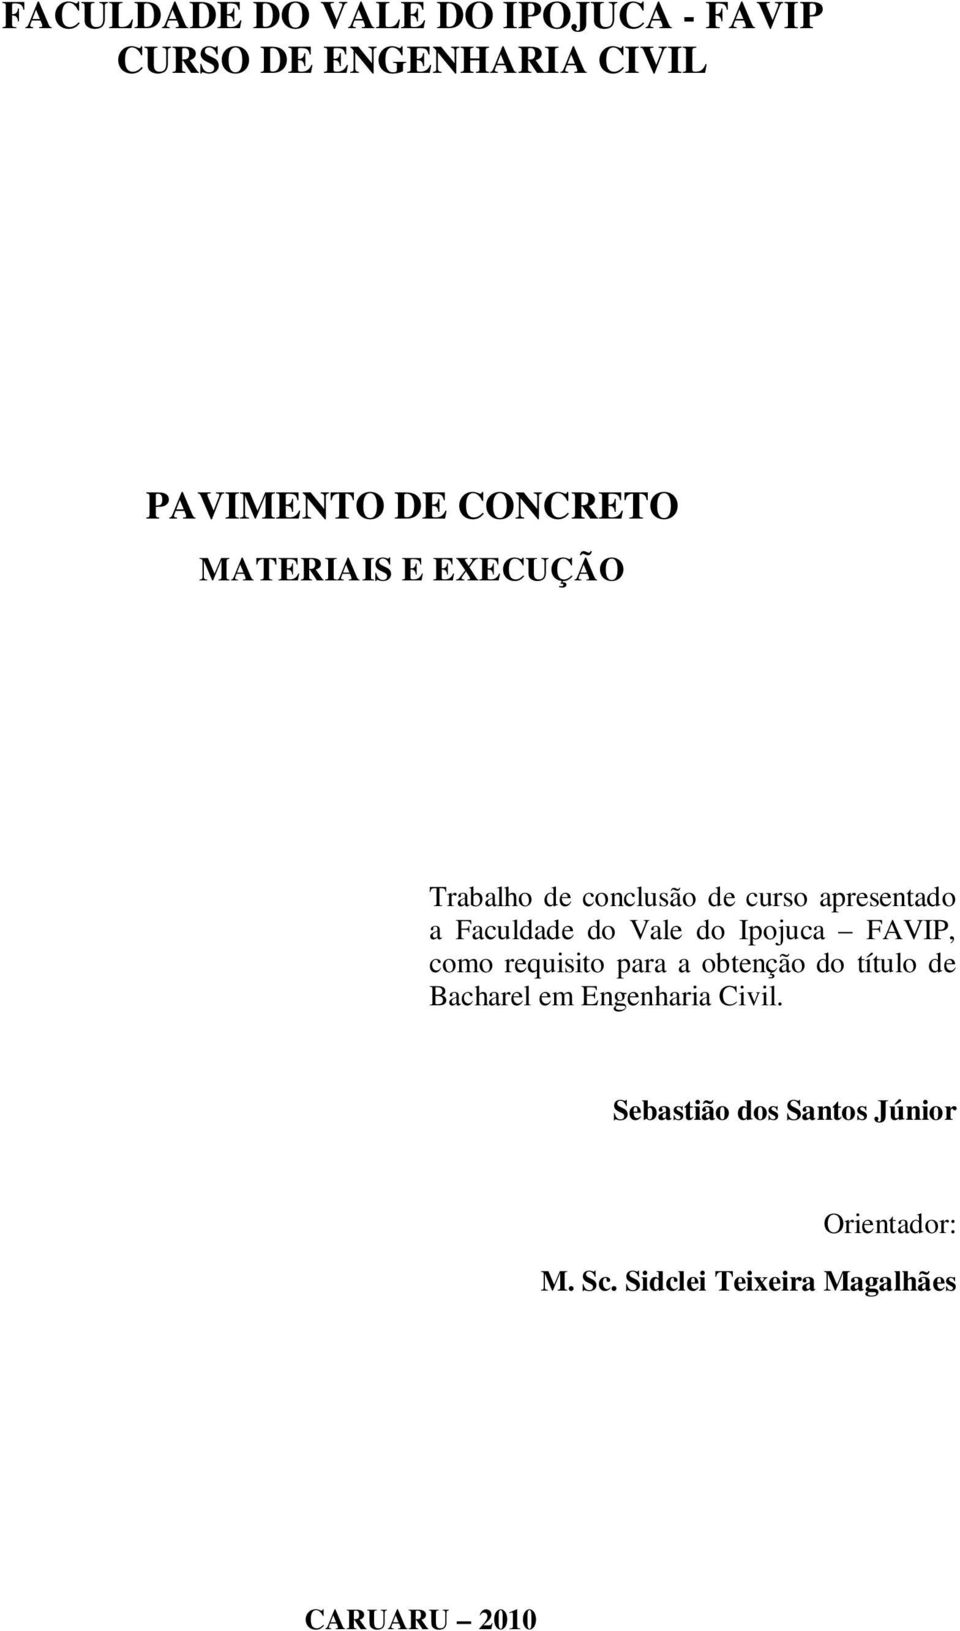 Ipojuca FAVIP, como requisito para a obtenção do título de Bacharel em Engenharia Civil.